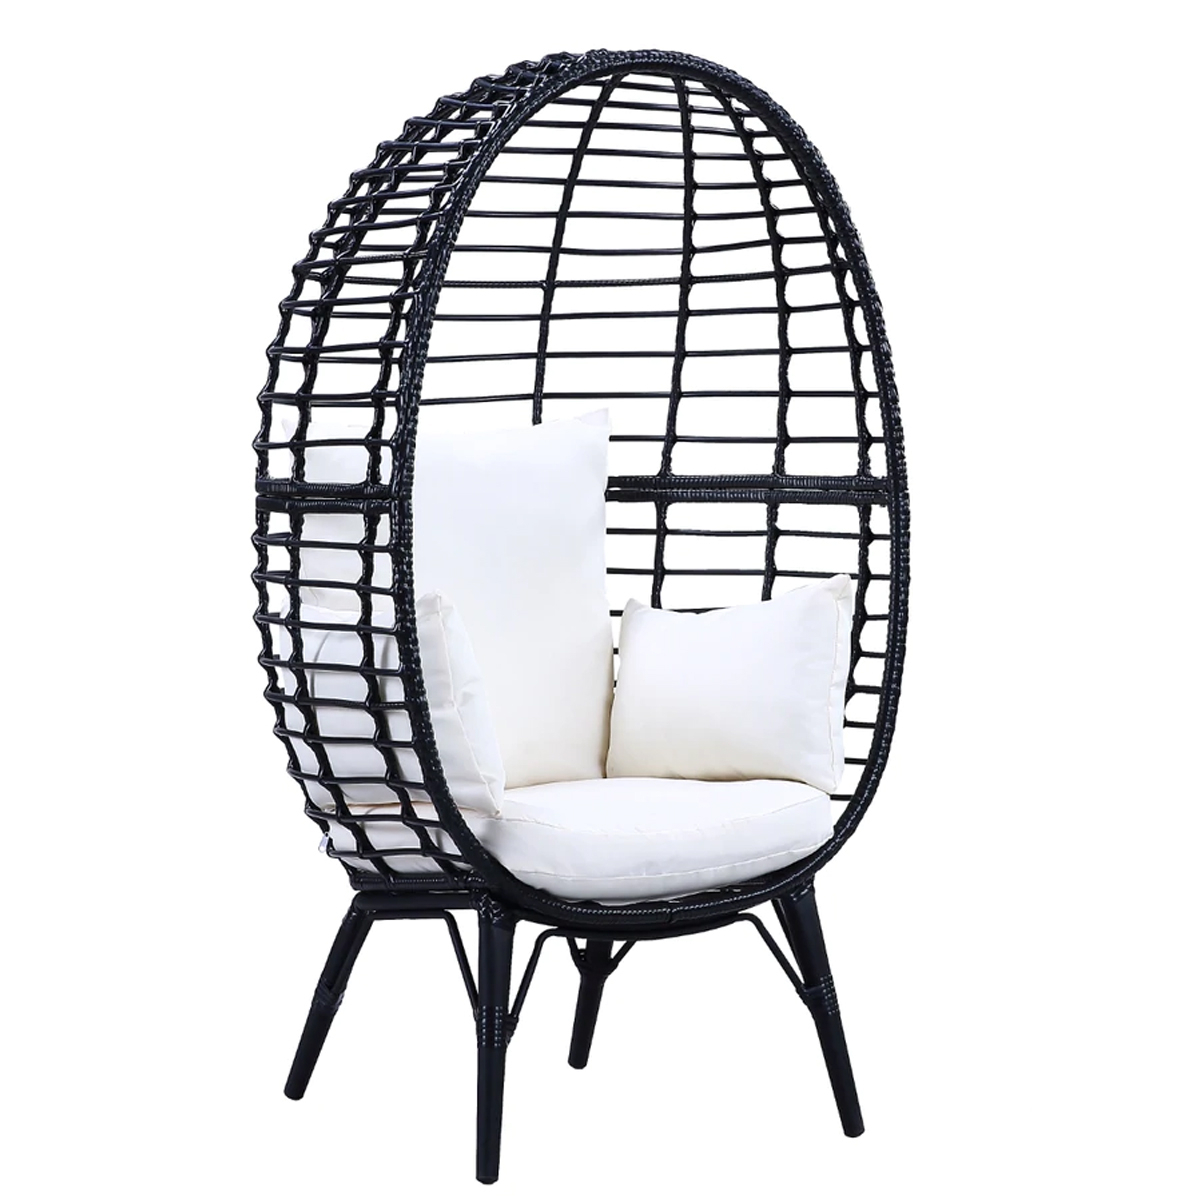 Loe 32 Inch Patio Lounge Chair, Oval Shape, Resin Rattan Wicker, Black- Saltoro Sherpi